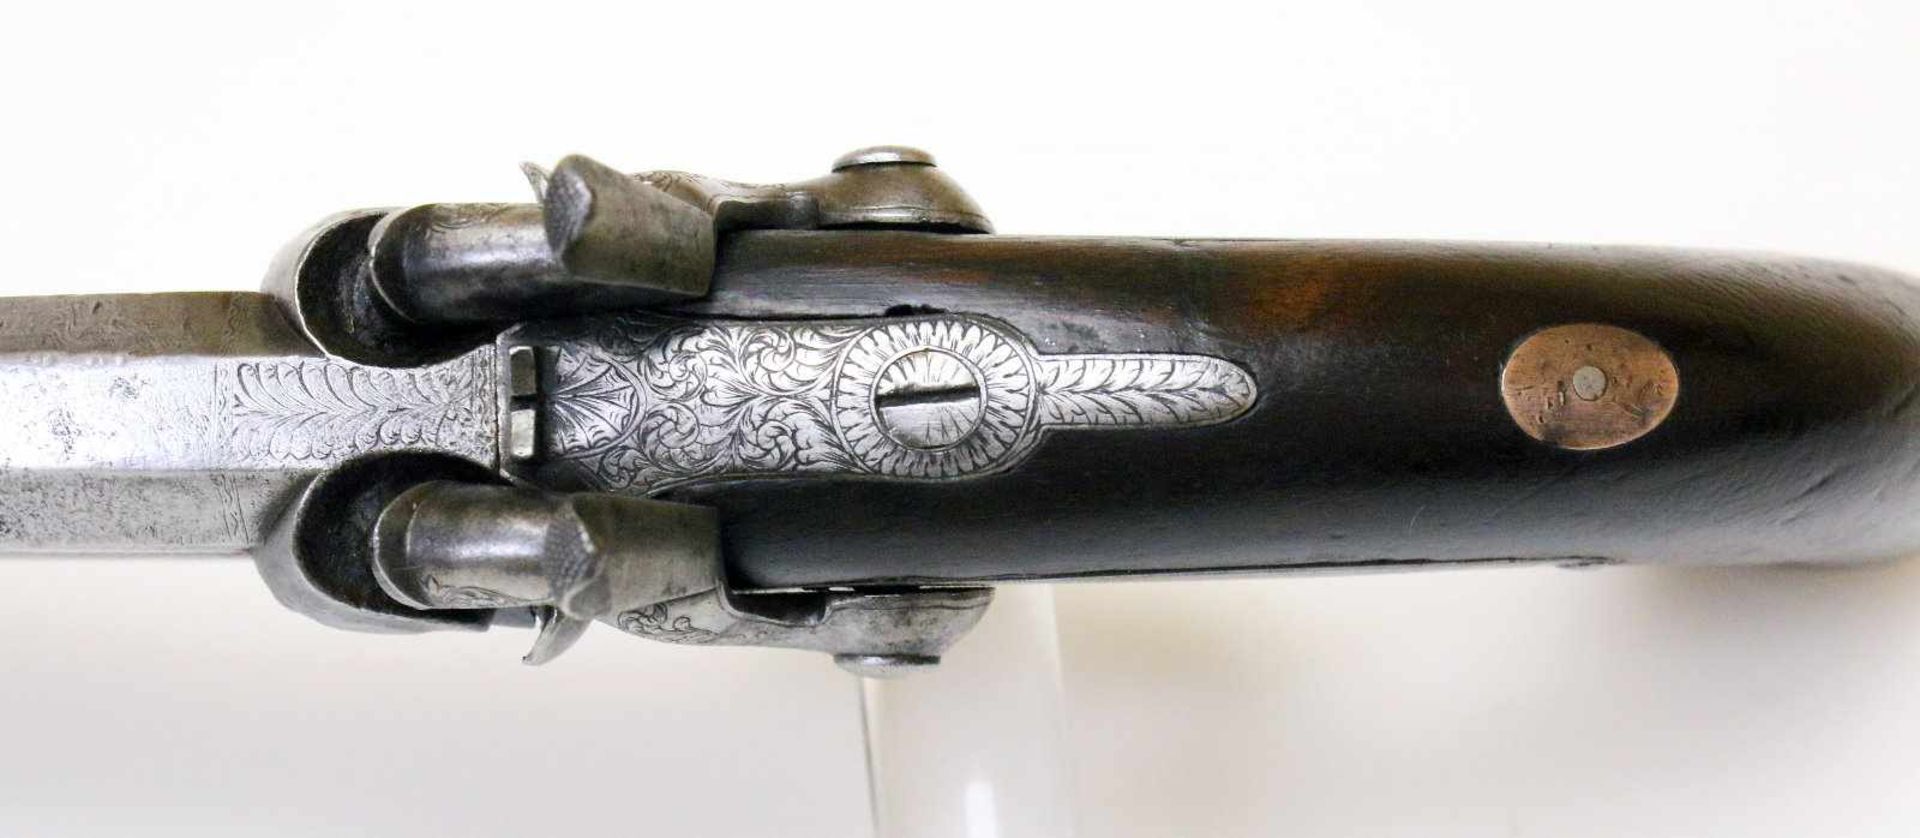 Doppelläufige Perkussionspistole - England um 1850 Cal. 14mm Perk., Zustand 2. Zwei übereinander - Bild 8 aus 15